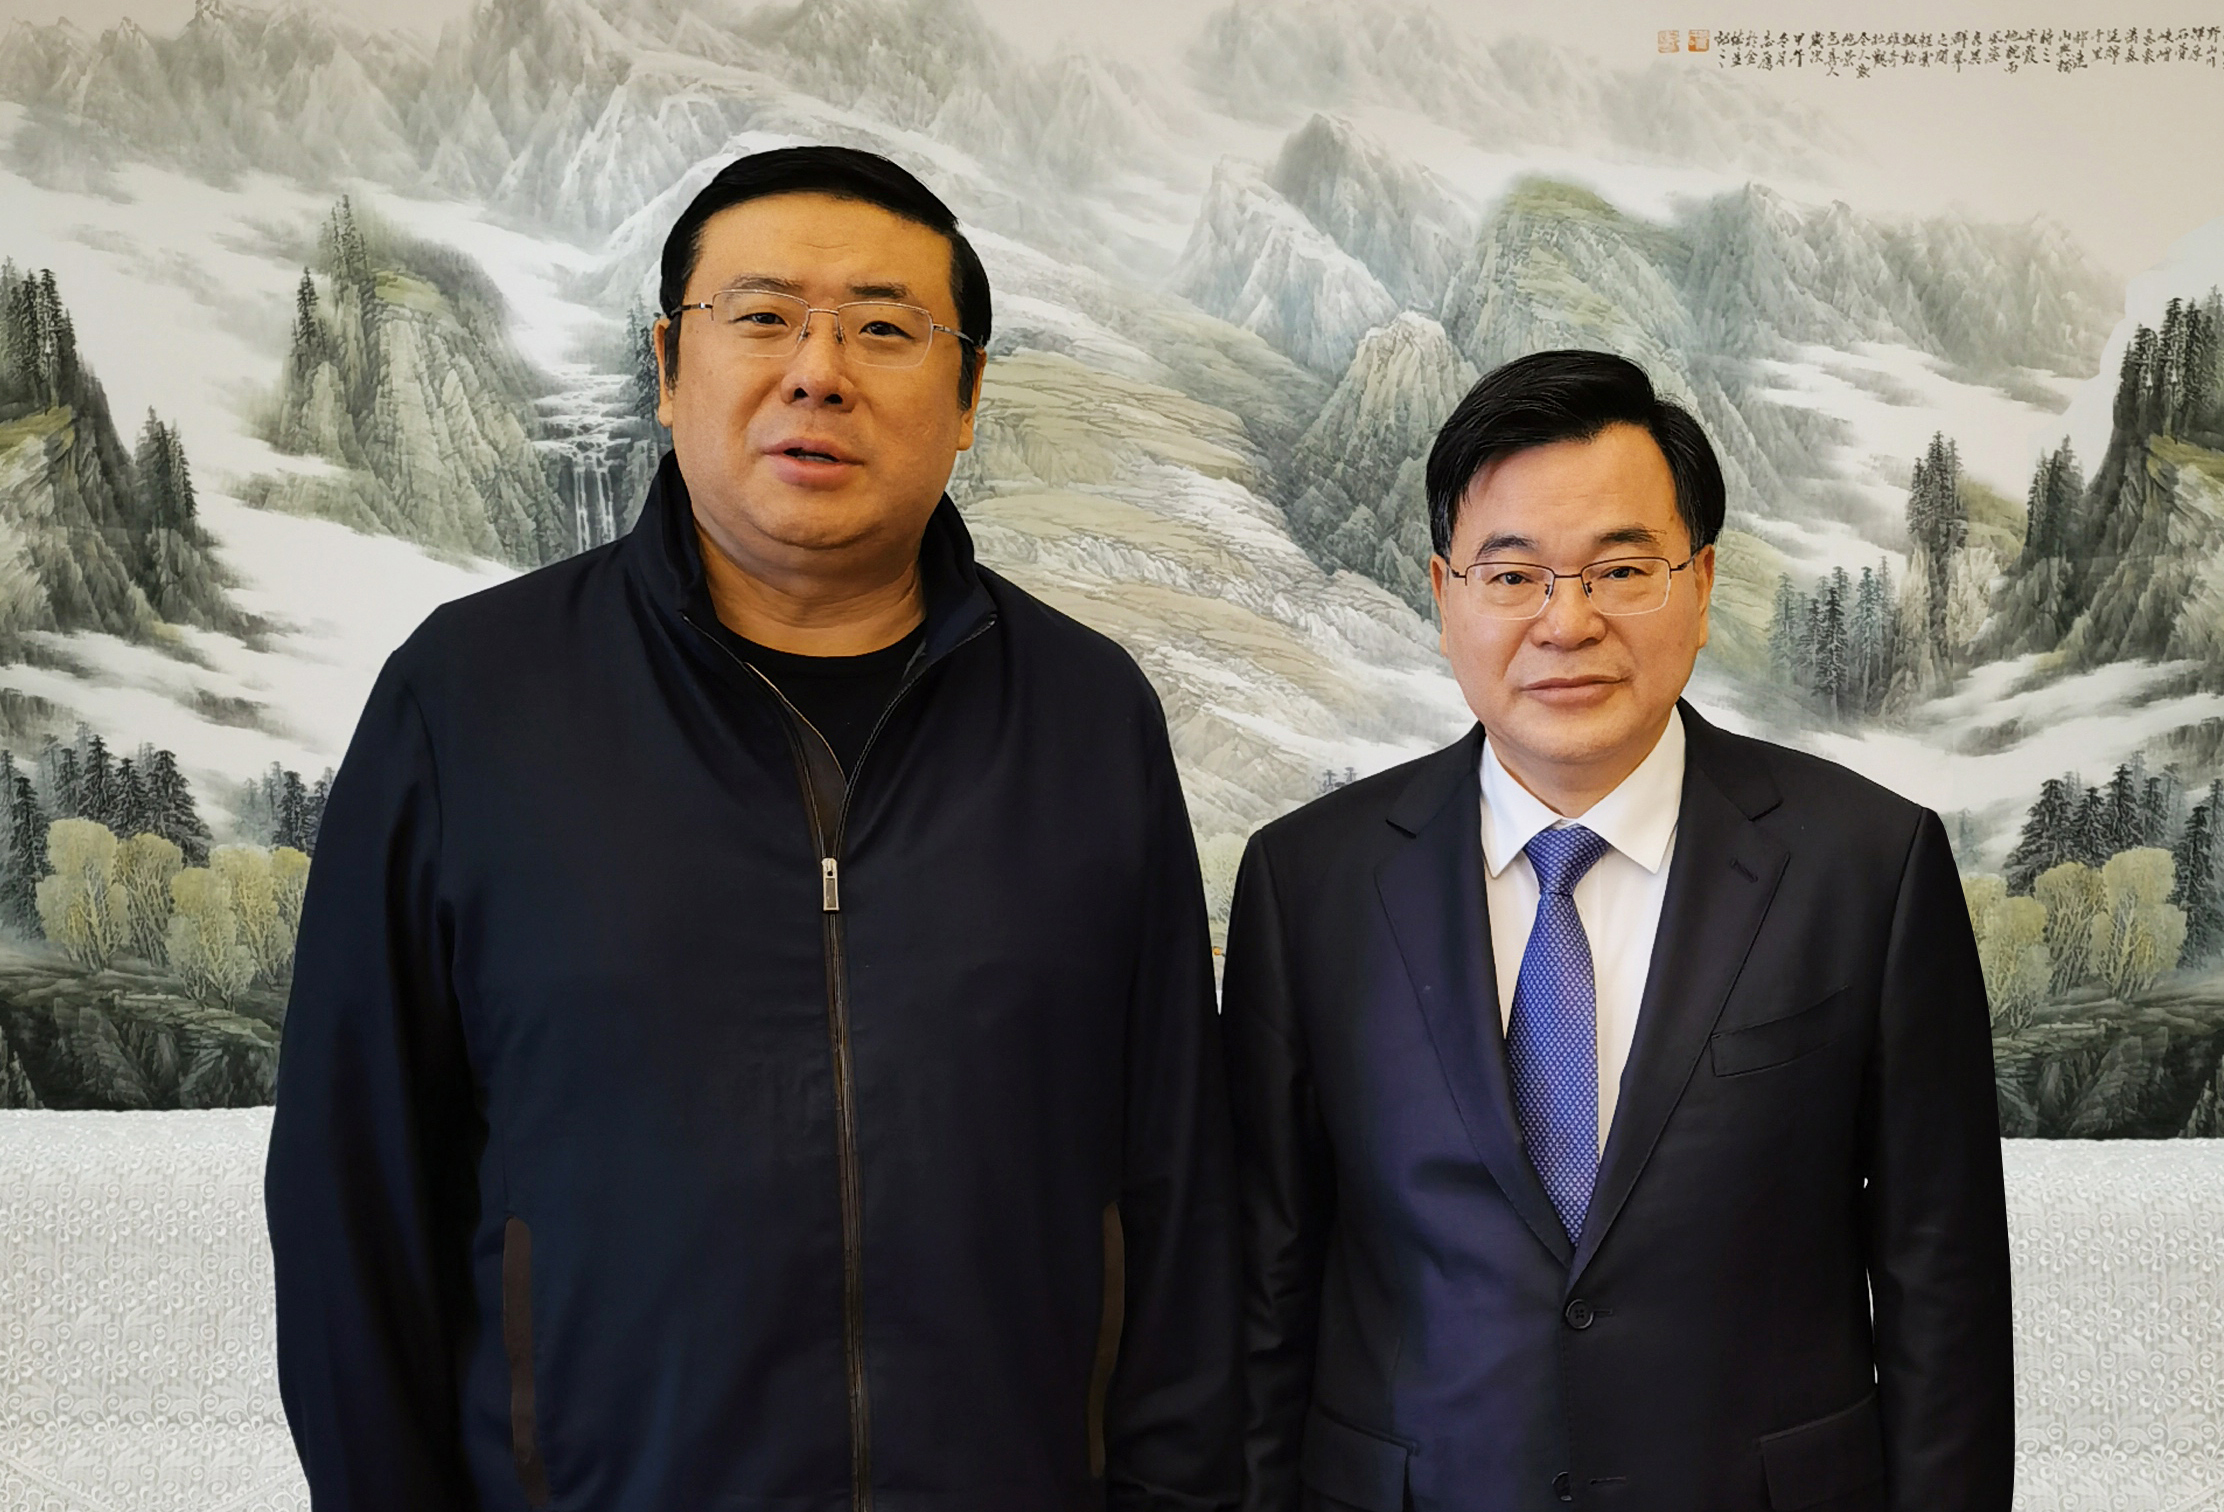 Chairman Li Yong took a photo with Hu Changsheng, secretary of CPC Gansu Provincial Committee